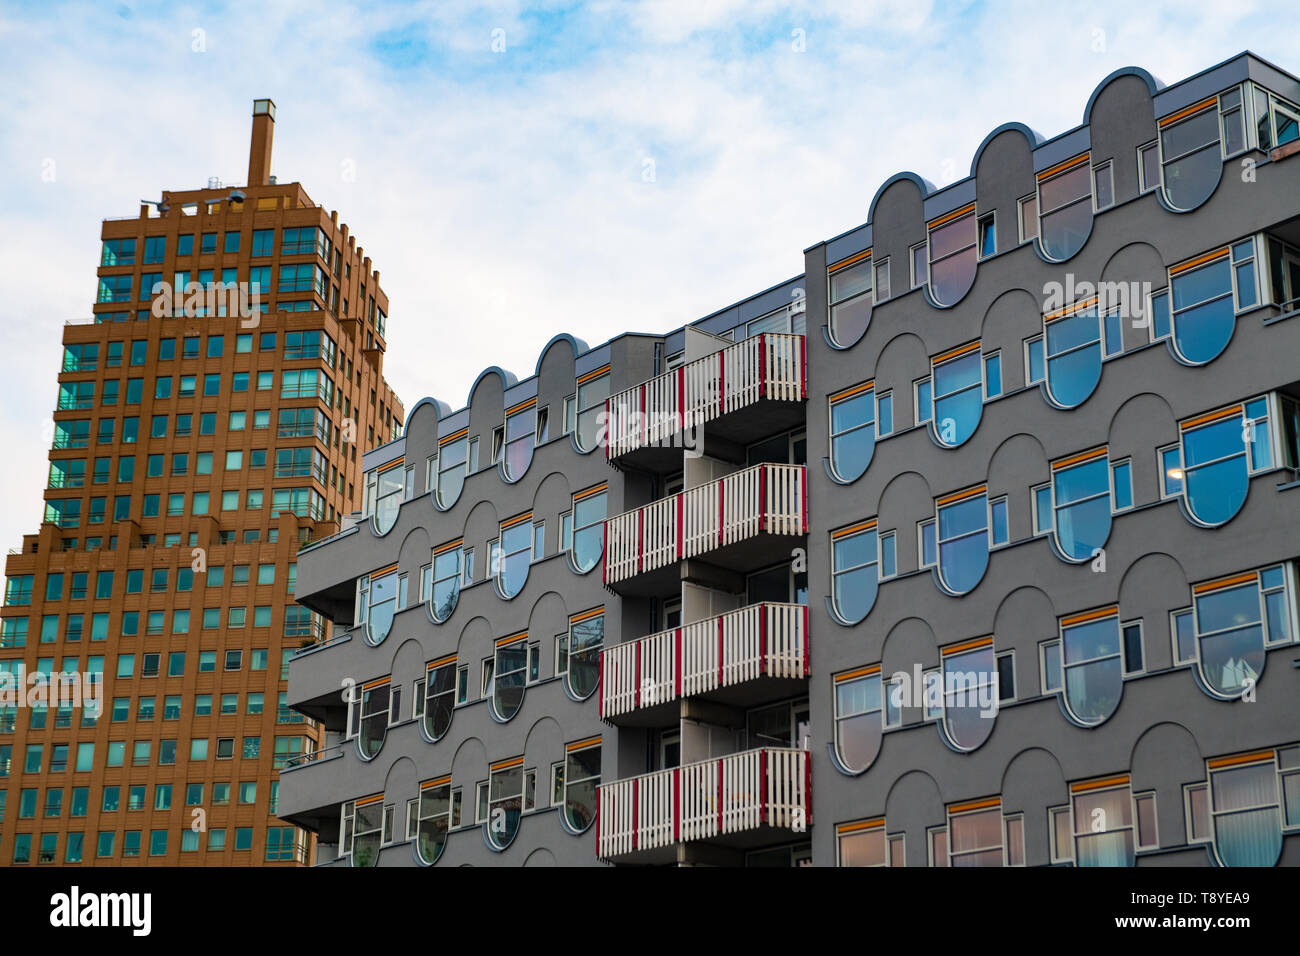 L'architecture moderne dans la ville néerlandaise de Rotterdam Pays-Bas Banque D'Images